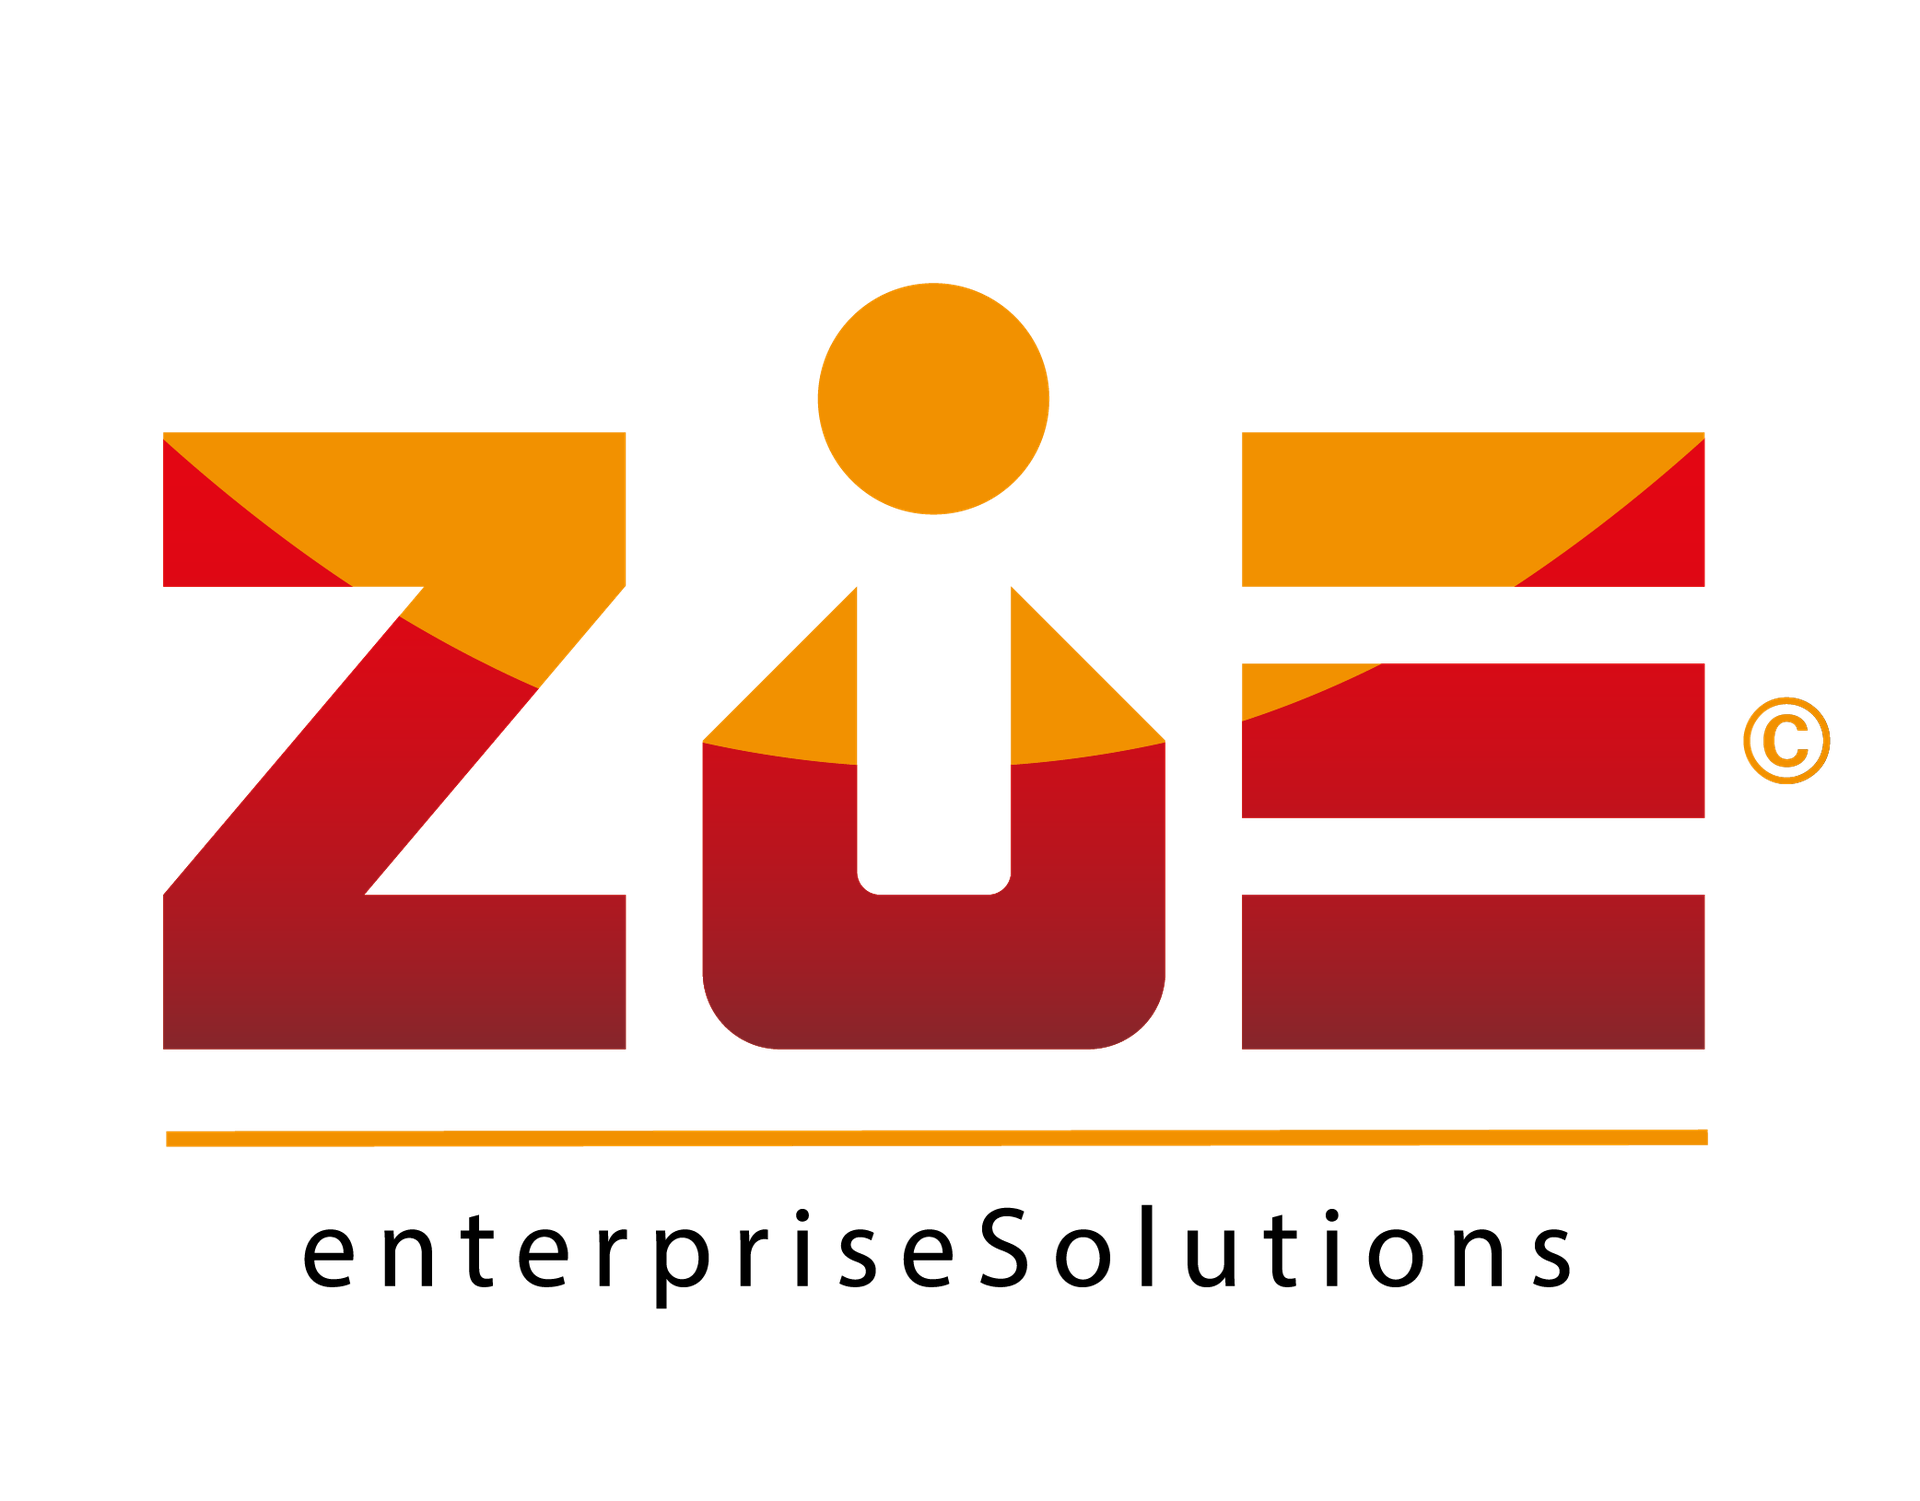 Zue SAS